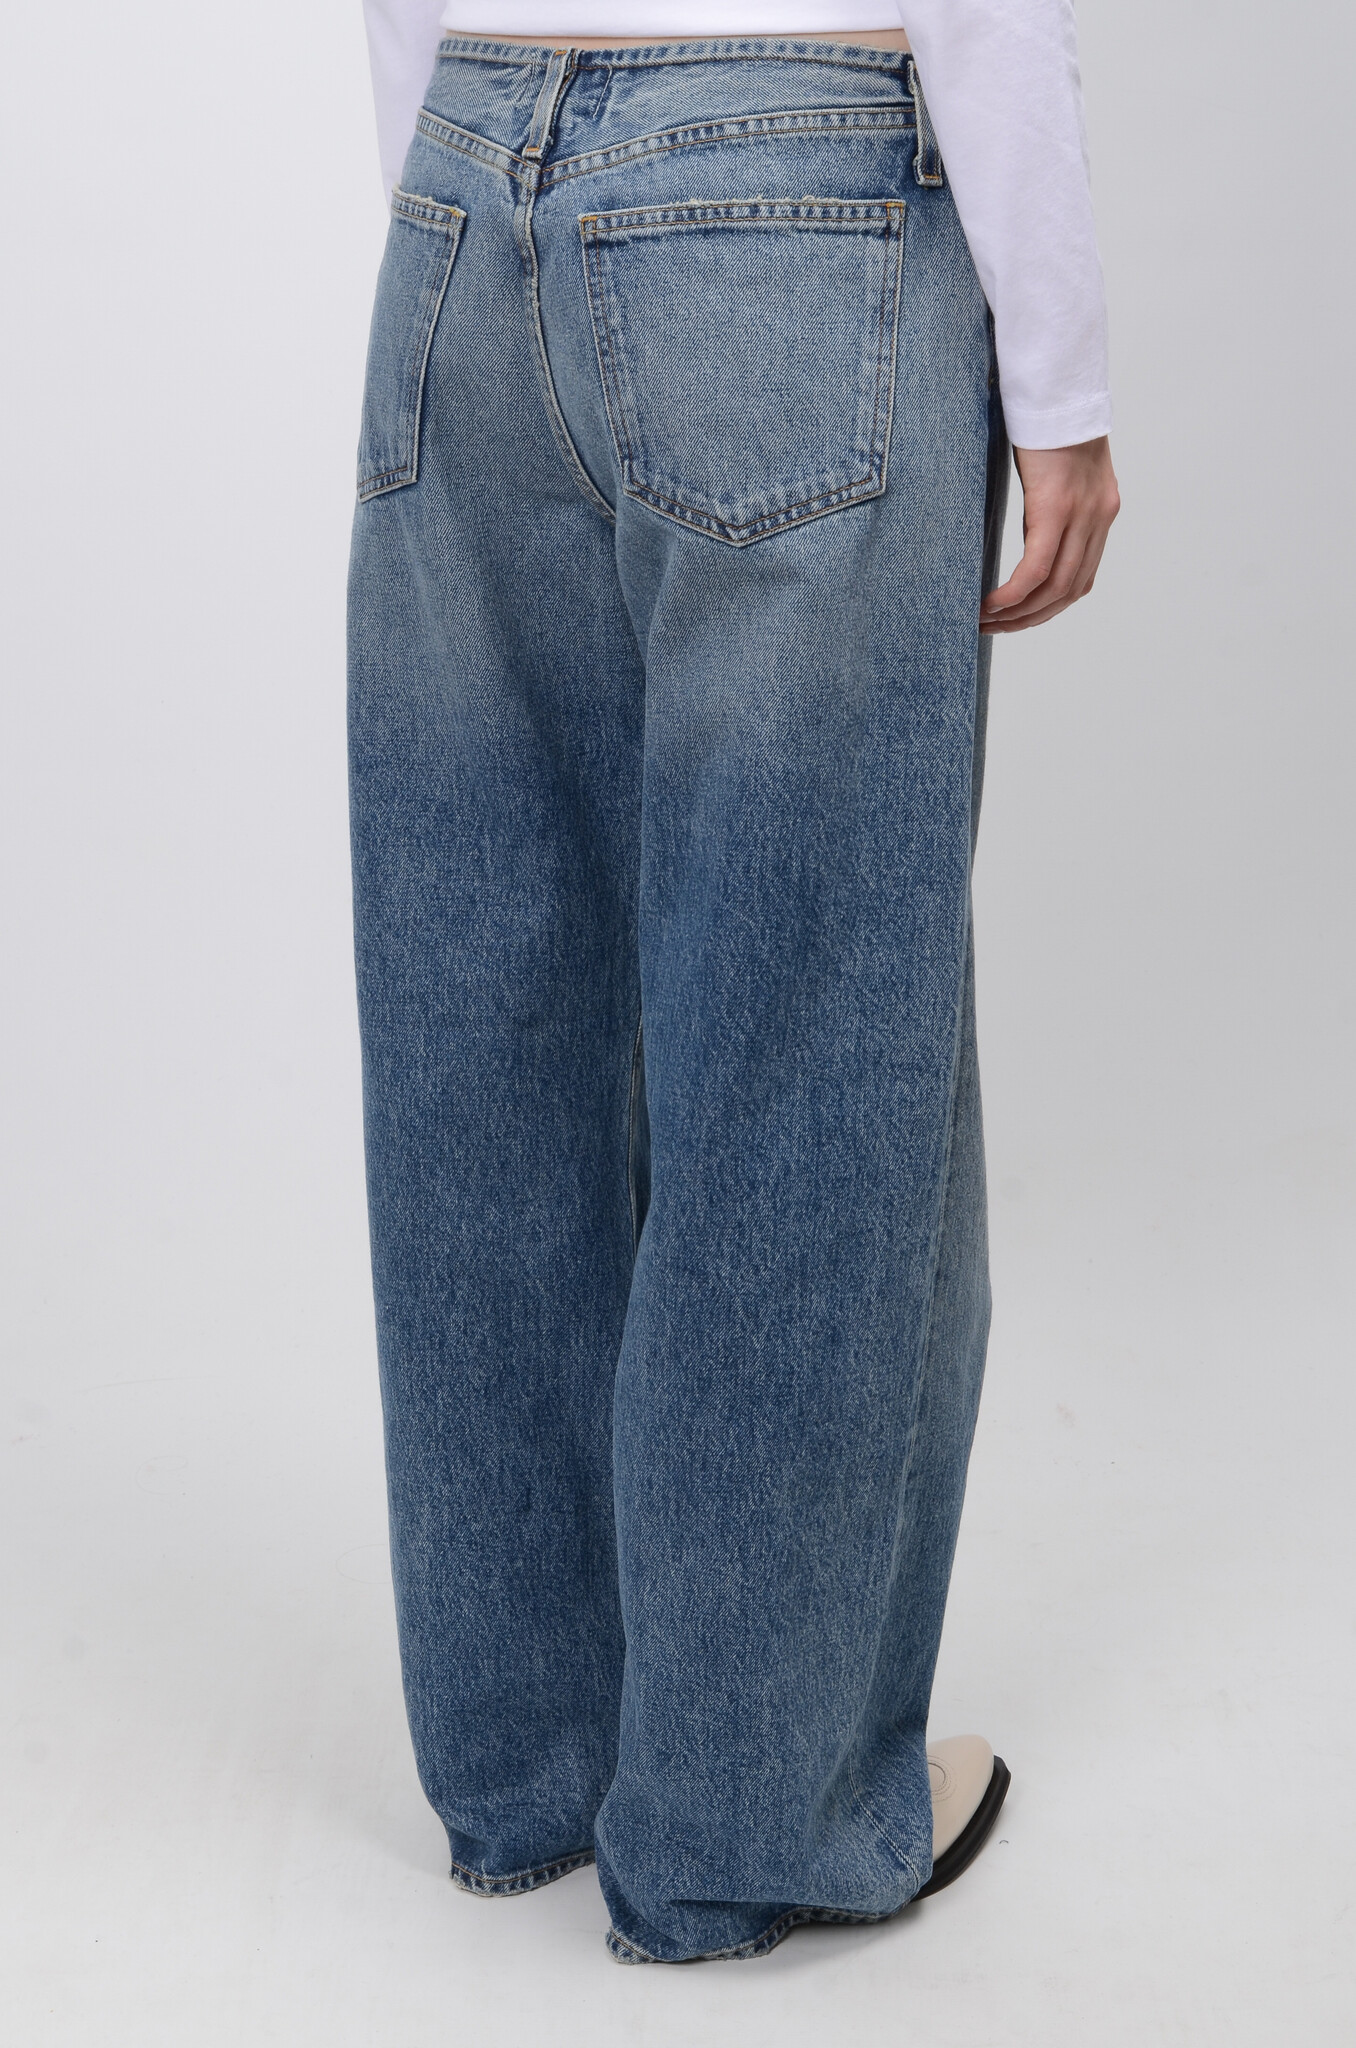 Lex Jeans in Swing-5